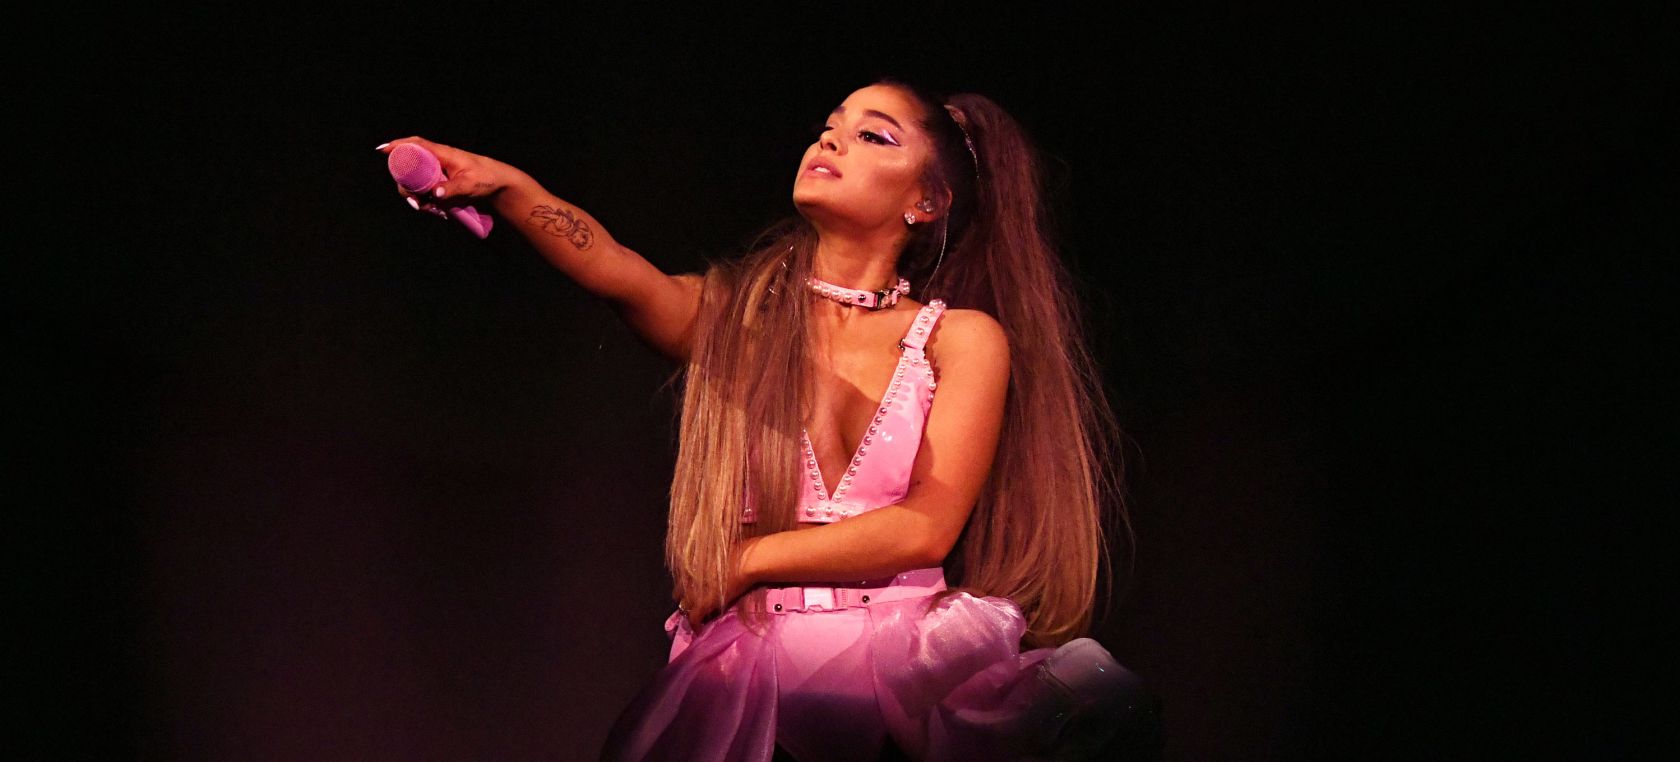 ANÁLISIS de ‘Positions’: Ariana Grande rinde homenaje al poder de la mujer a través de la sexualidad